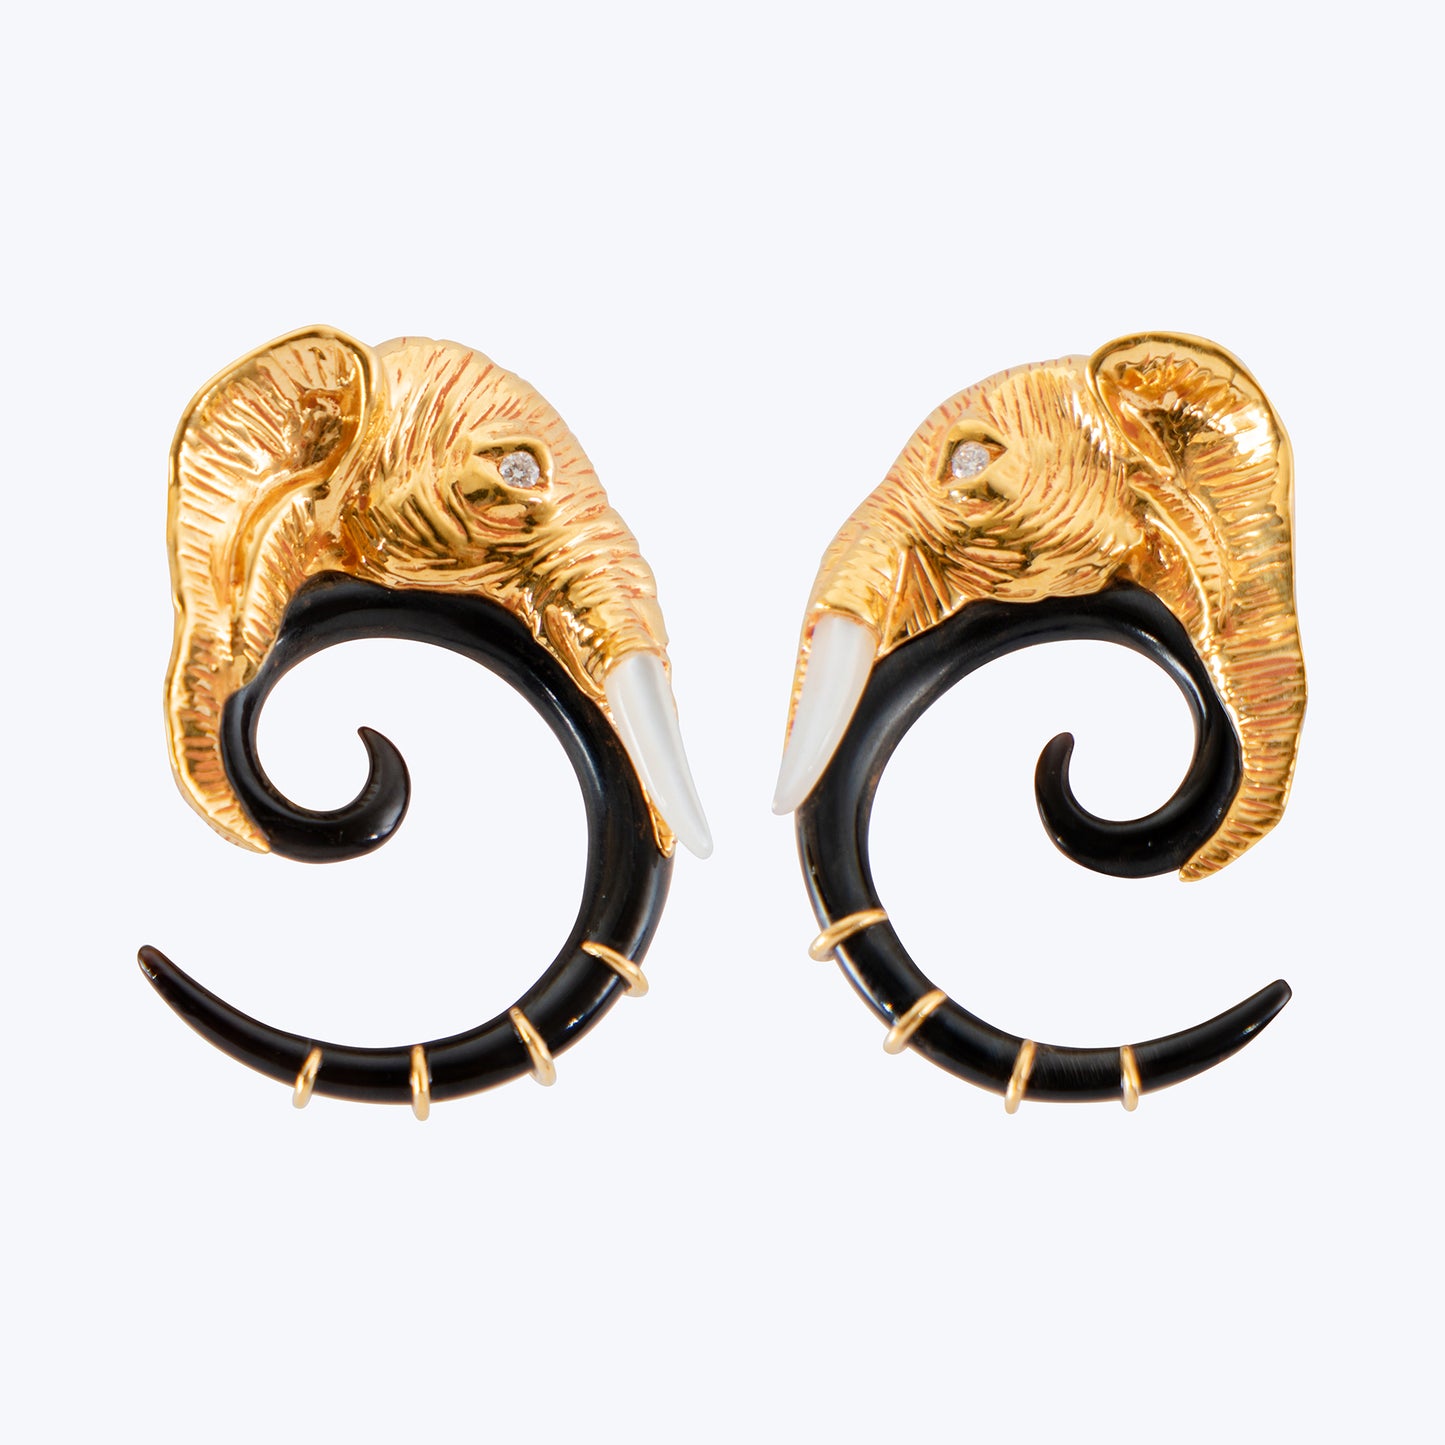 Elephant Earrings with Black Horn & Diamond